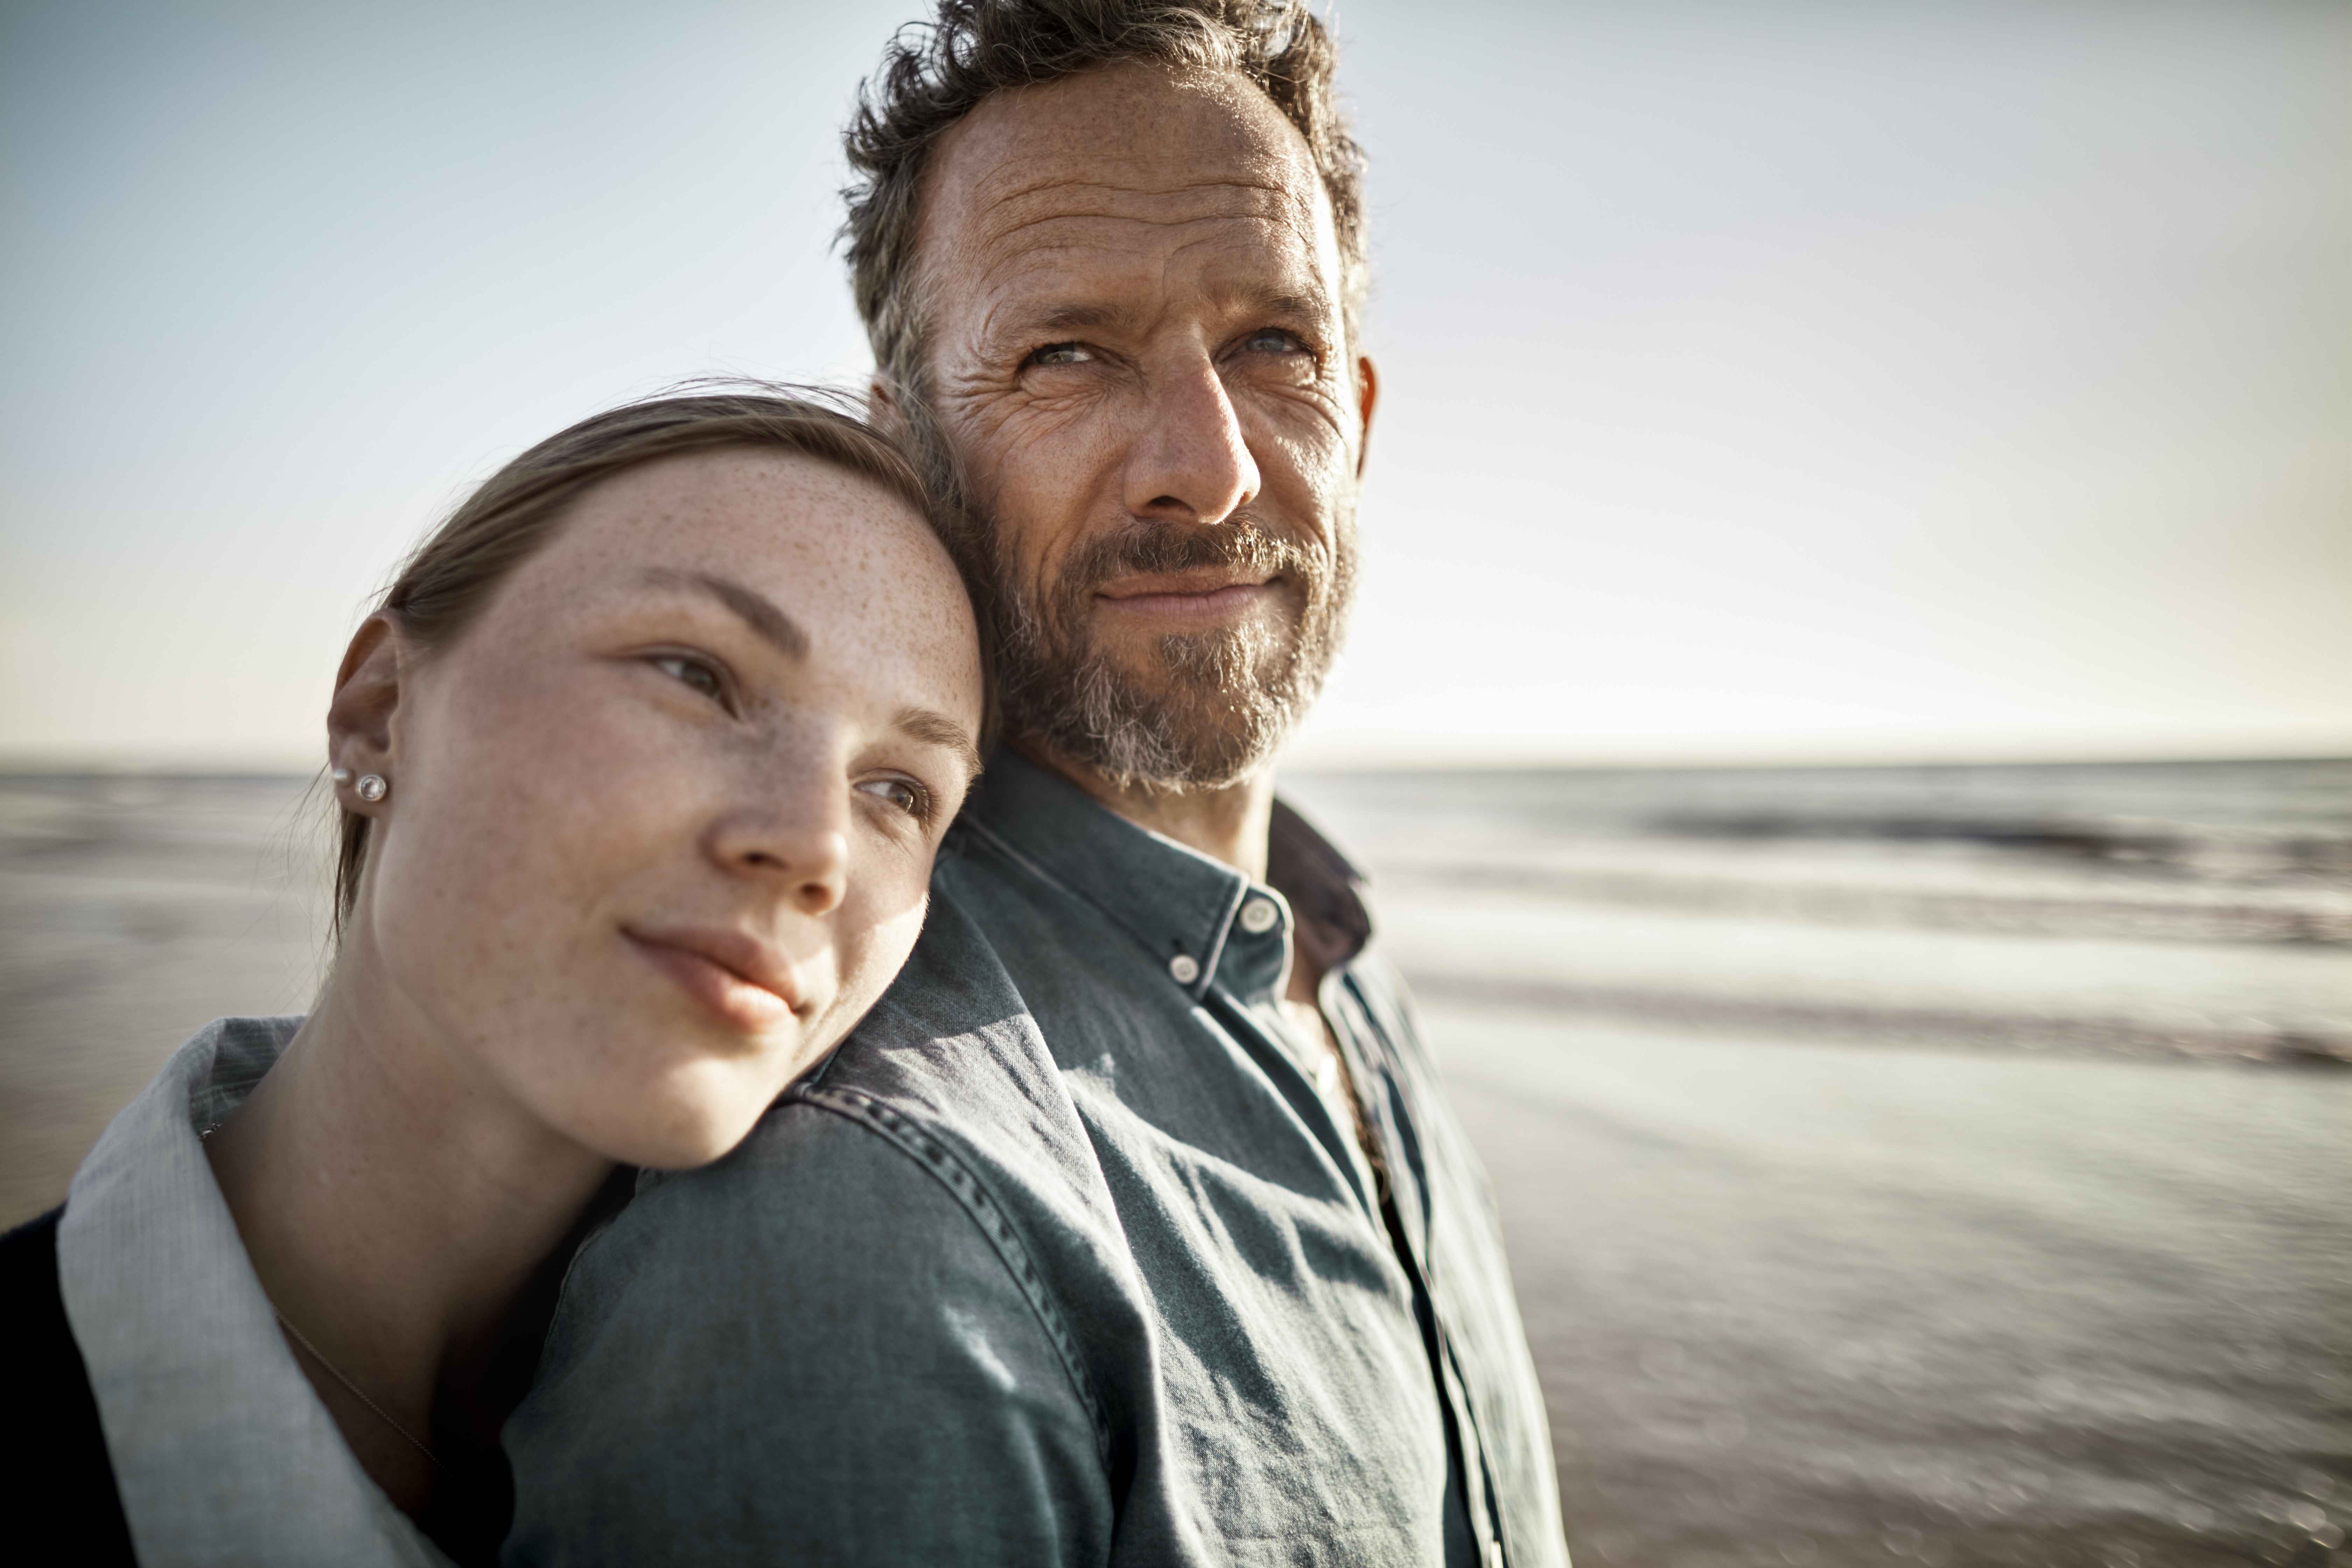 Porträt eines Mannes und einer jungen Frau am Meer | Quelle: Getty Images